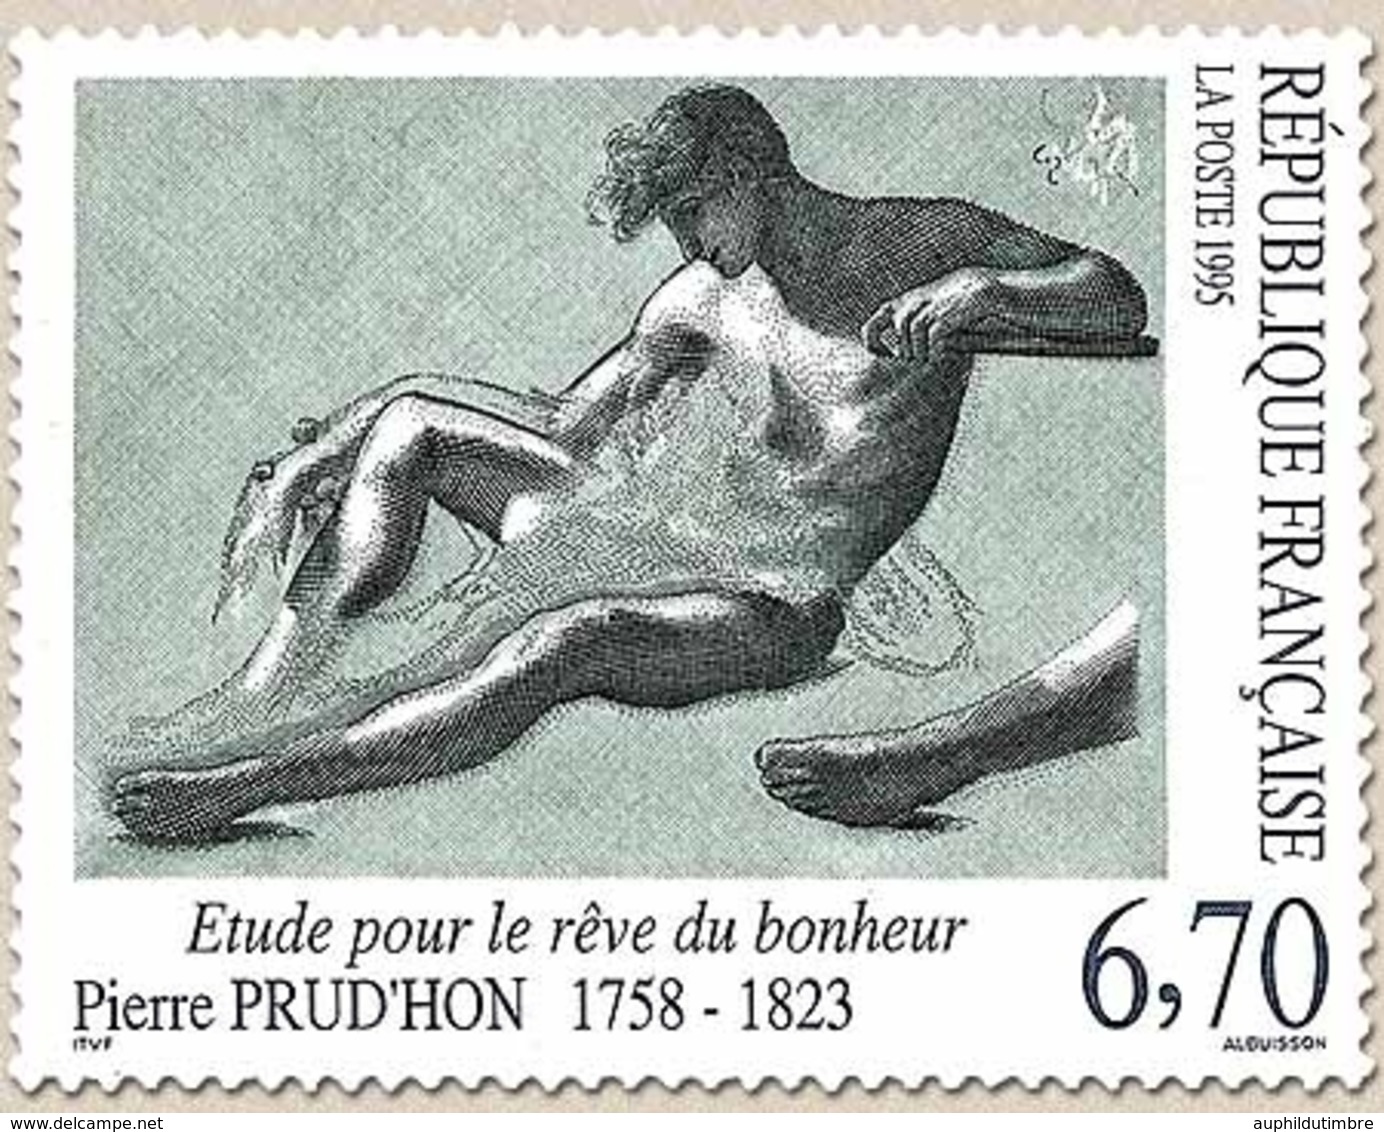 Série Artistique. Etude Pour Le Rêve Du Bonheur. Œuvre De Pierre Prud'hon (1758-1823). 6f.70 Y2927 - Unused Stamps